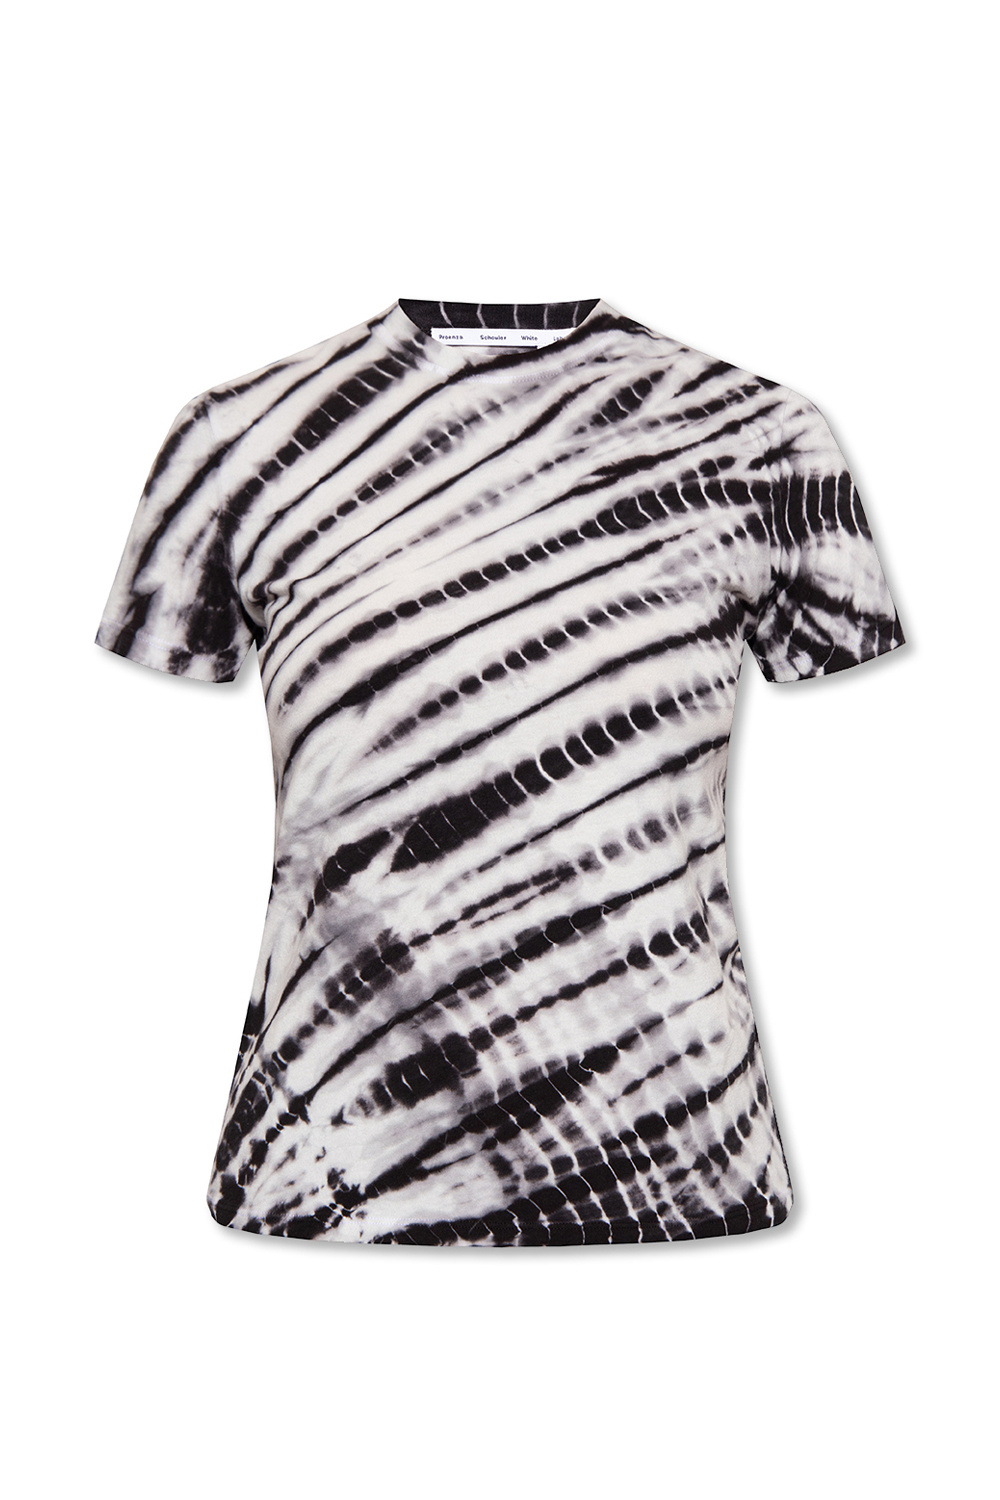 Proenza Schouler White Label Tie-Dye Cotton T-Shirt